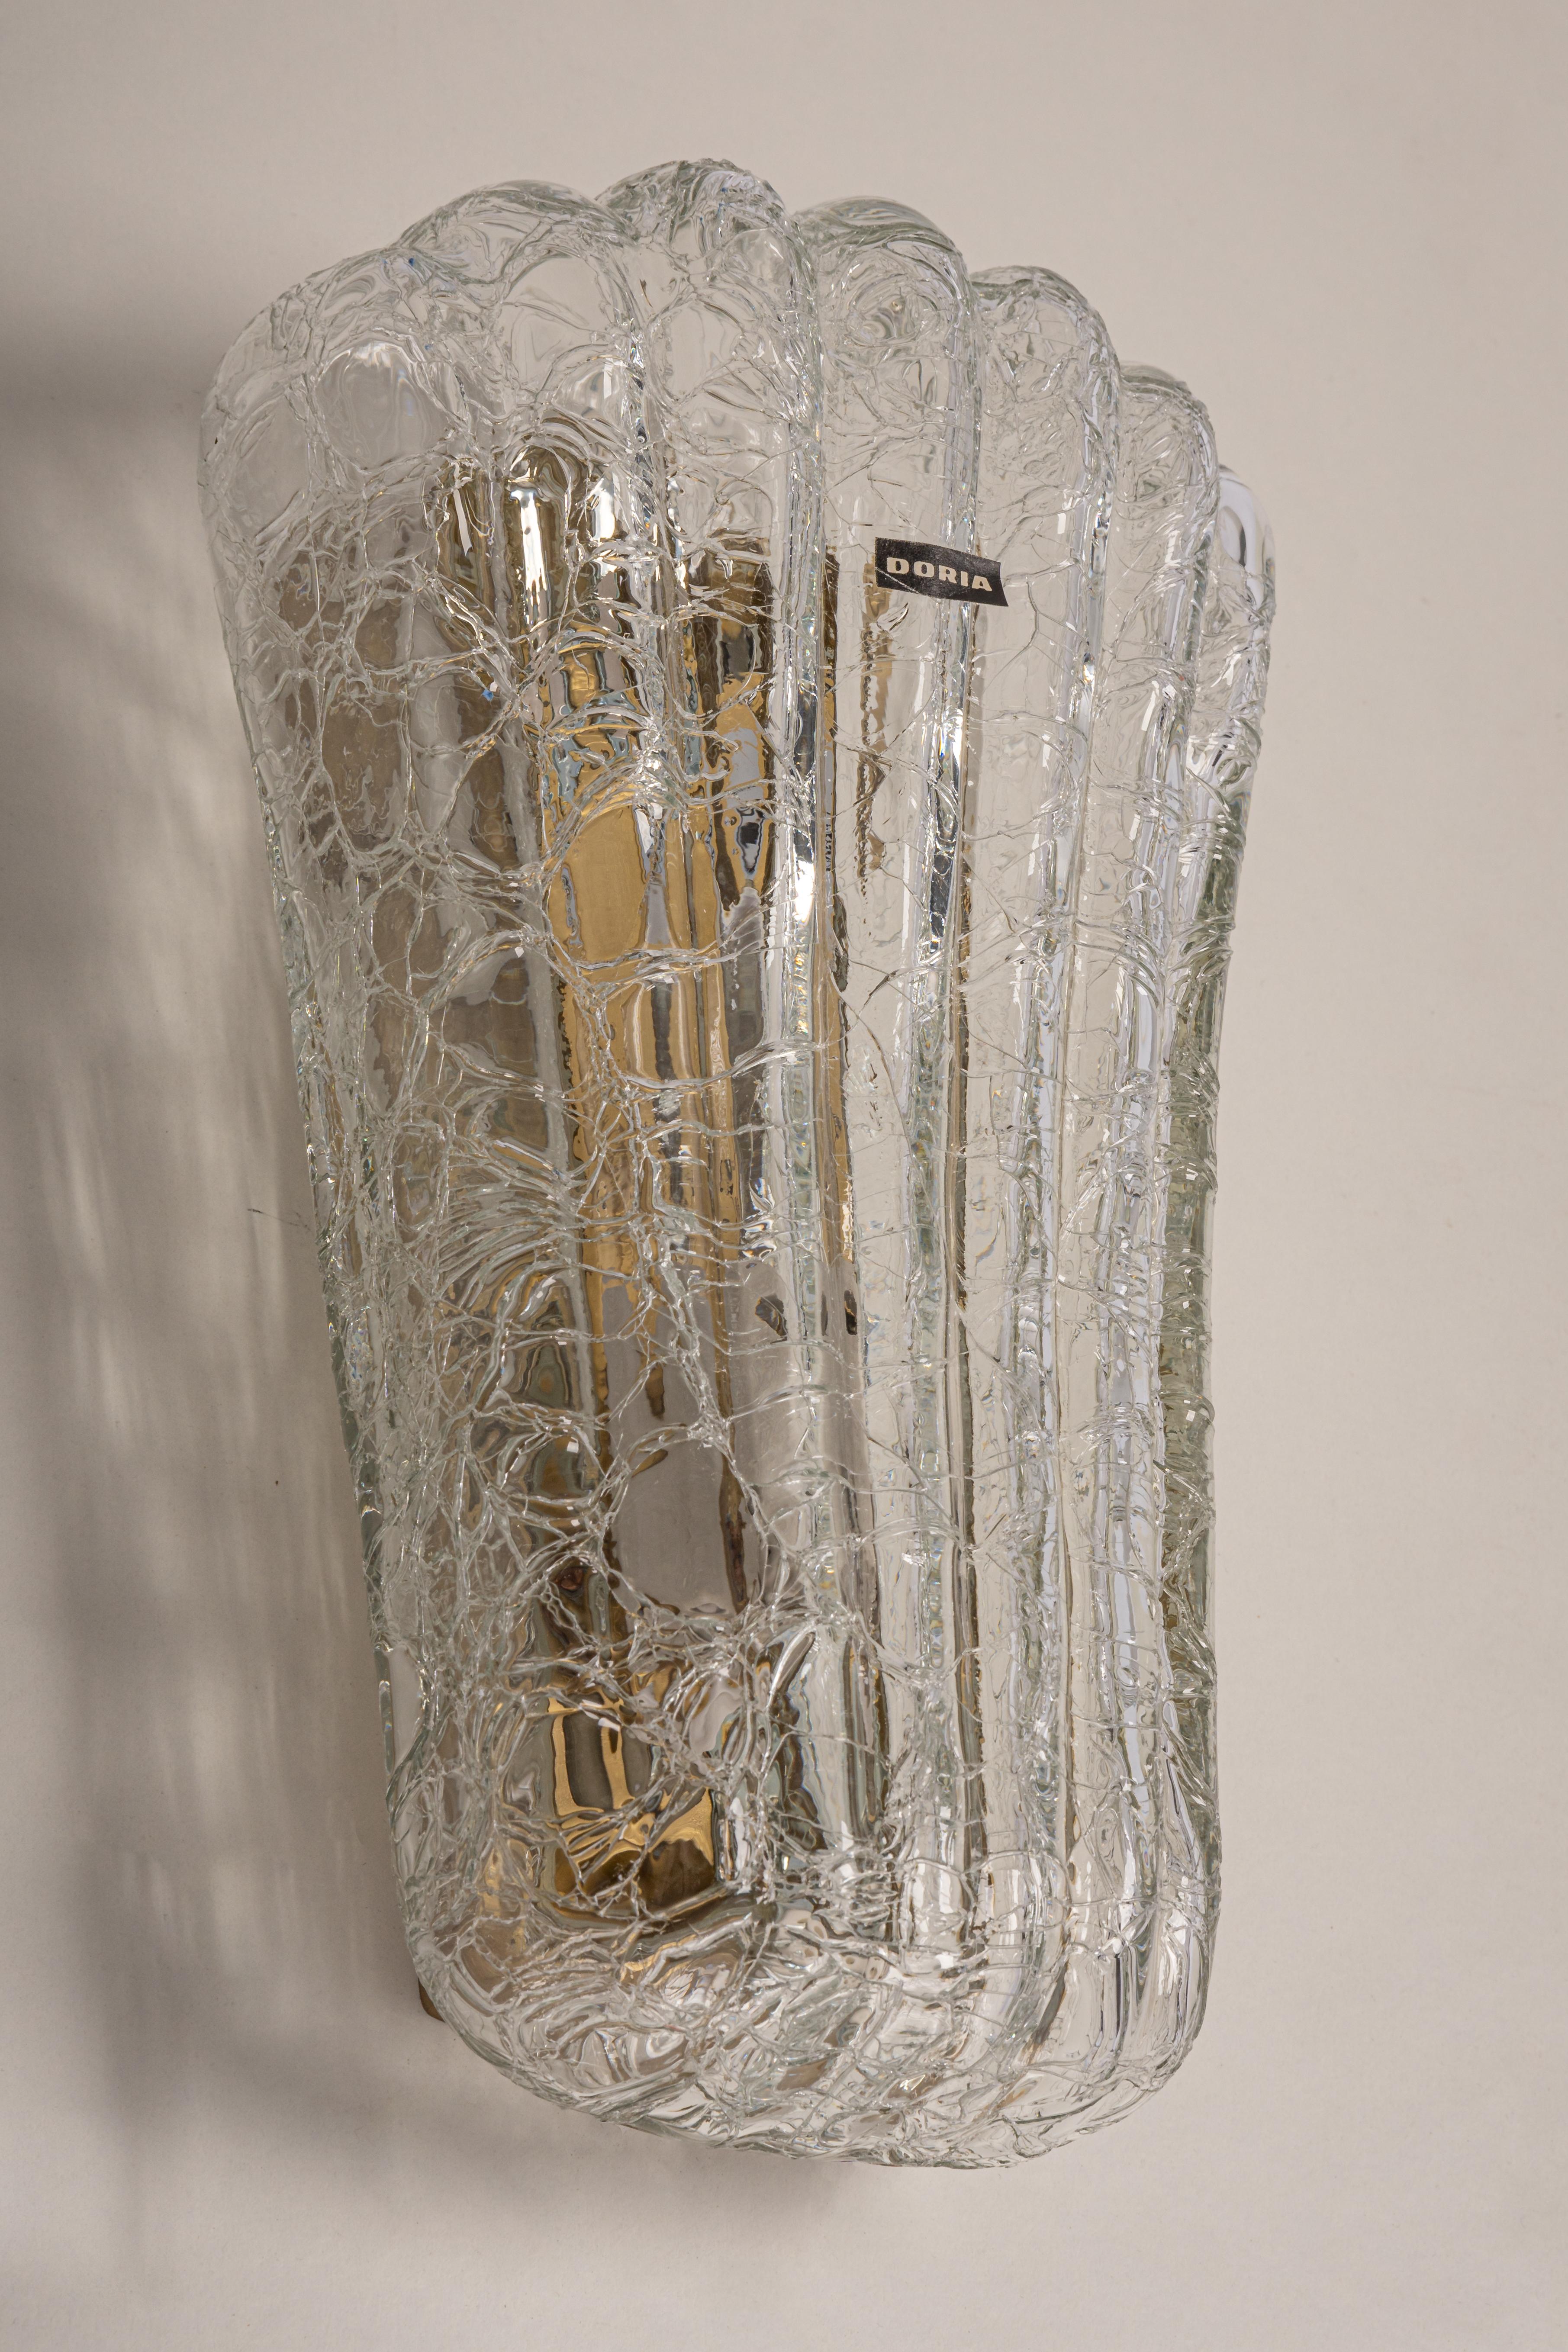 Wunderschönes Paar Wandleuchter aus der Mitte des Jahrhunderts mit klarem Glas in Krokodiloptik, hergestellt von Doria Leuchten, Deutschland, ca. 1960-1969.
Hochwertig und in sehr gutem Zustand. Gereinigt, gut verkabelt und einsatzbereit. 

Jede